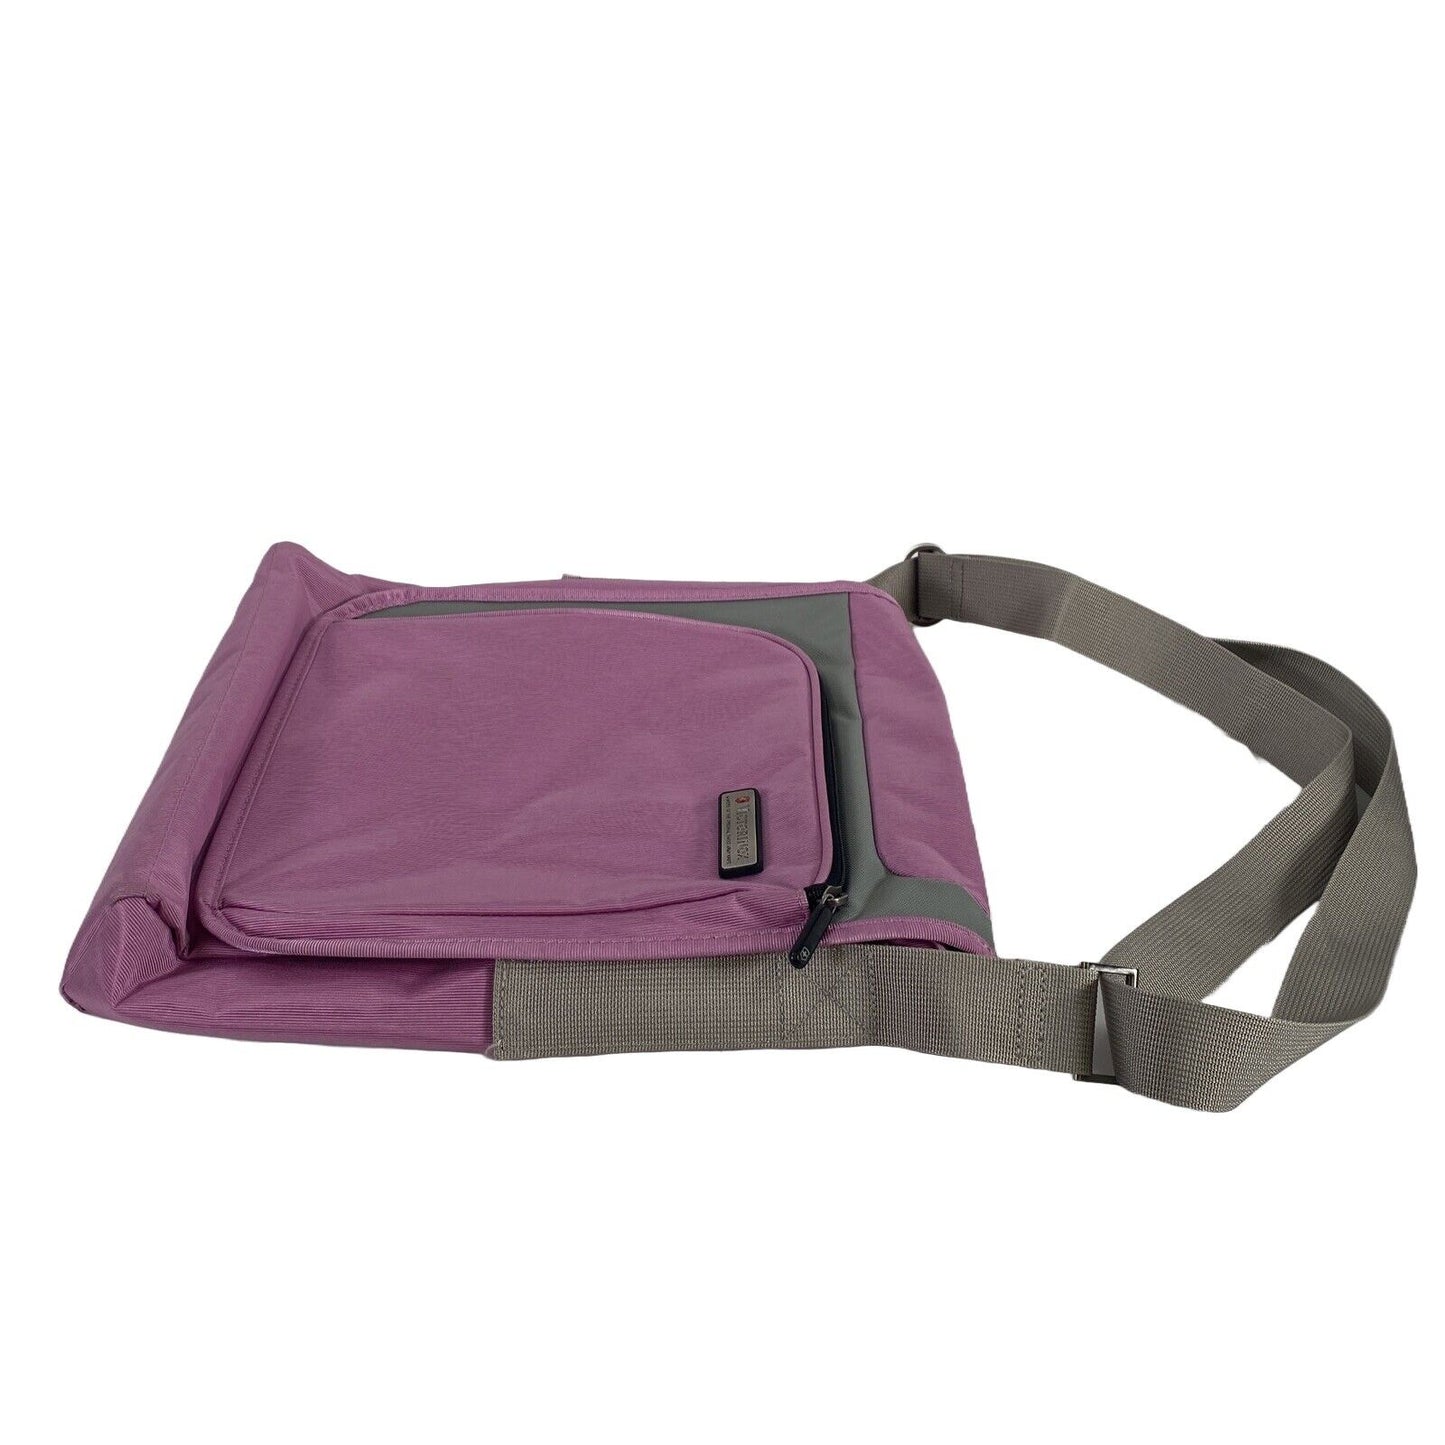 Victorinox Women's Purple Shoulder School Book Bag